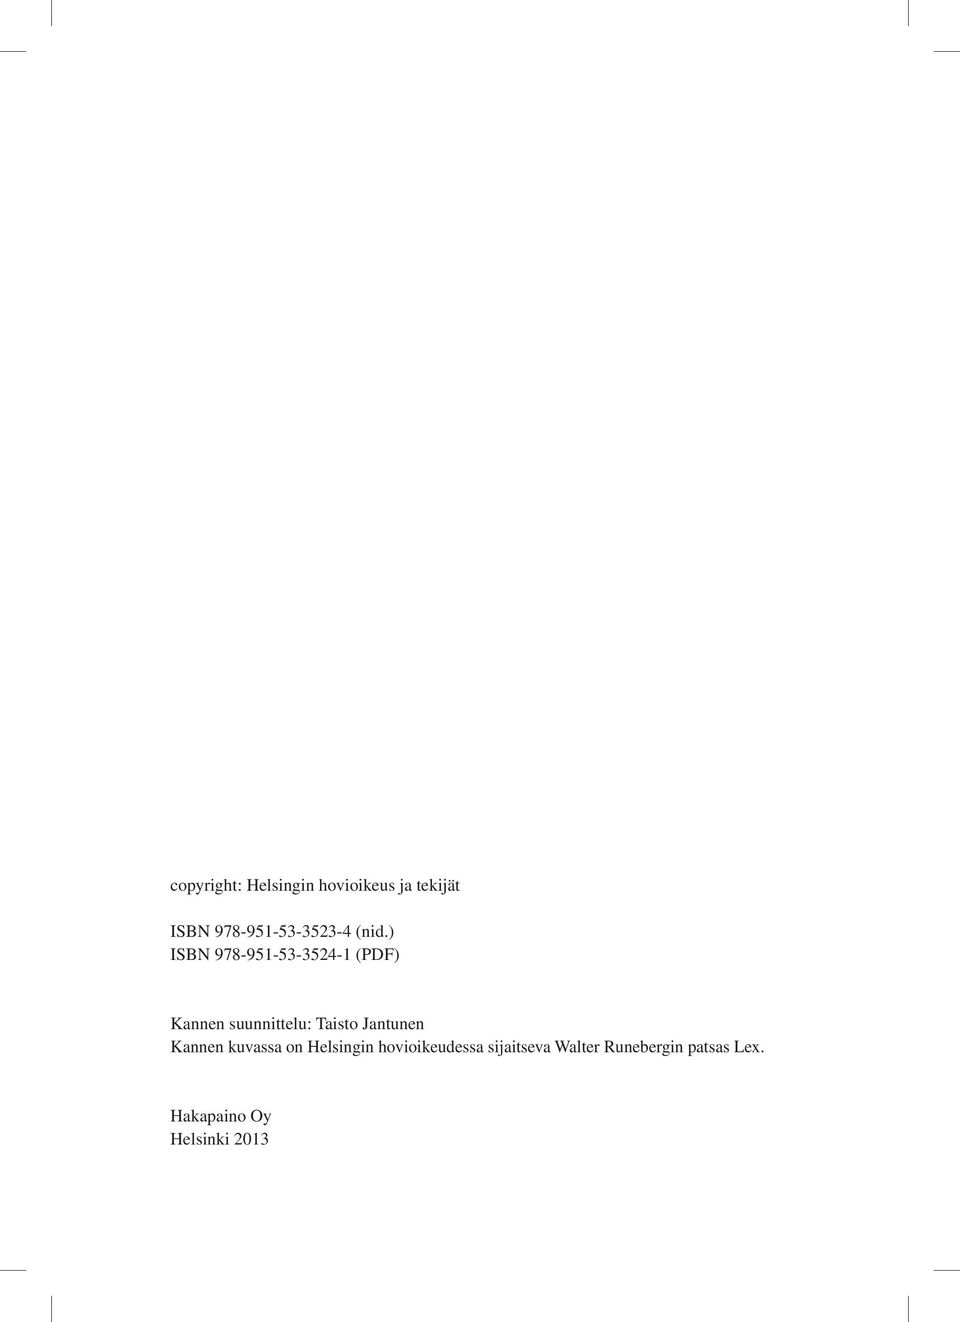 ) ISBN 978-951-53-3524-1 (PDF) Kannen suunnittelu: Taisto